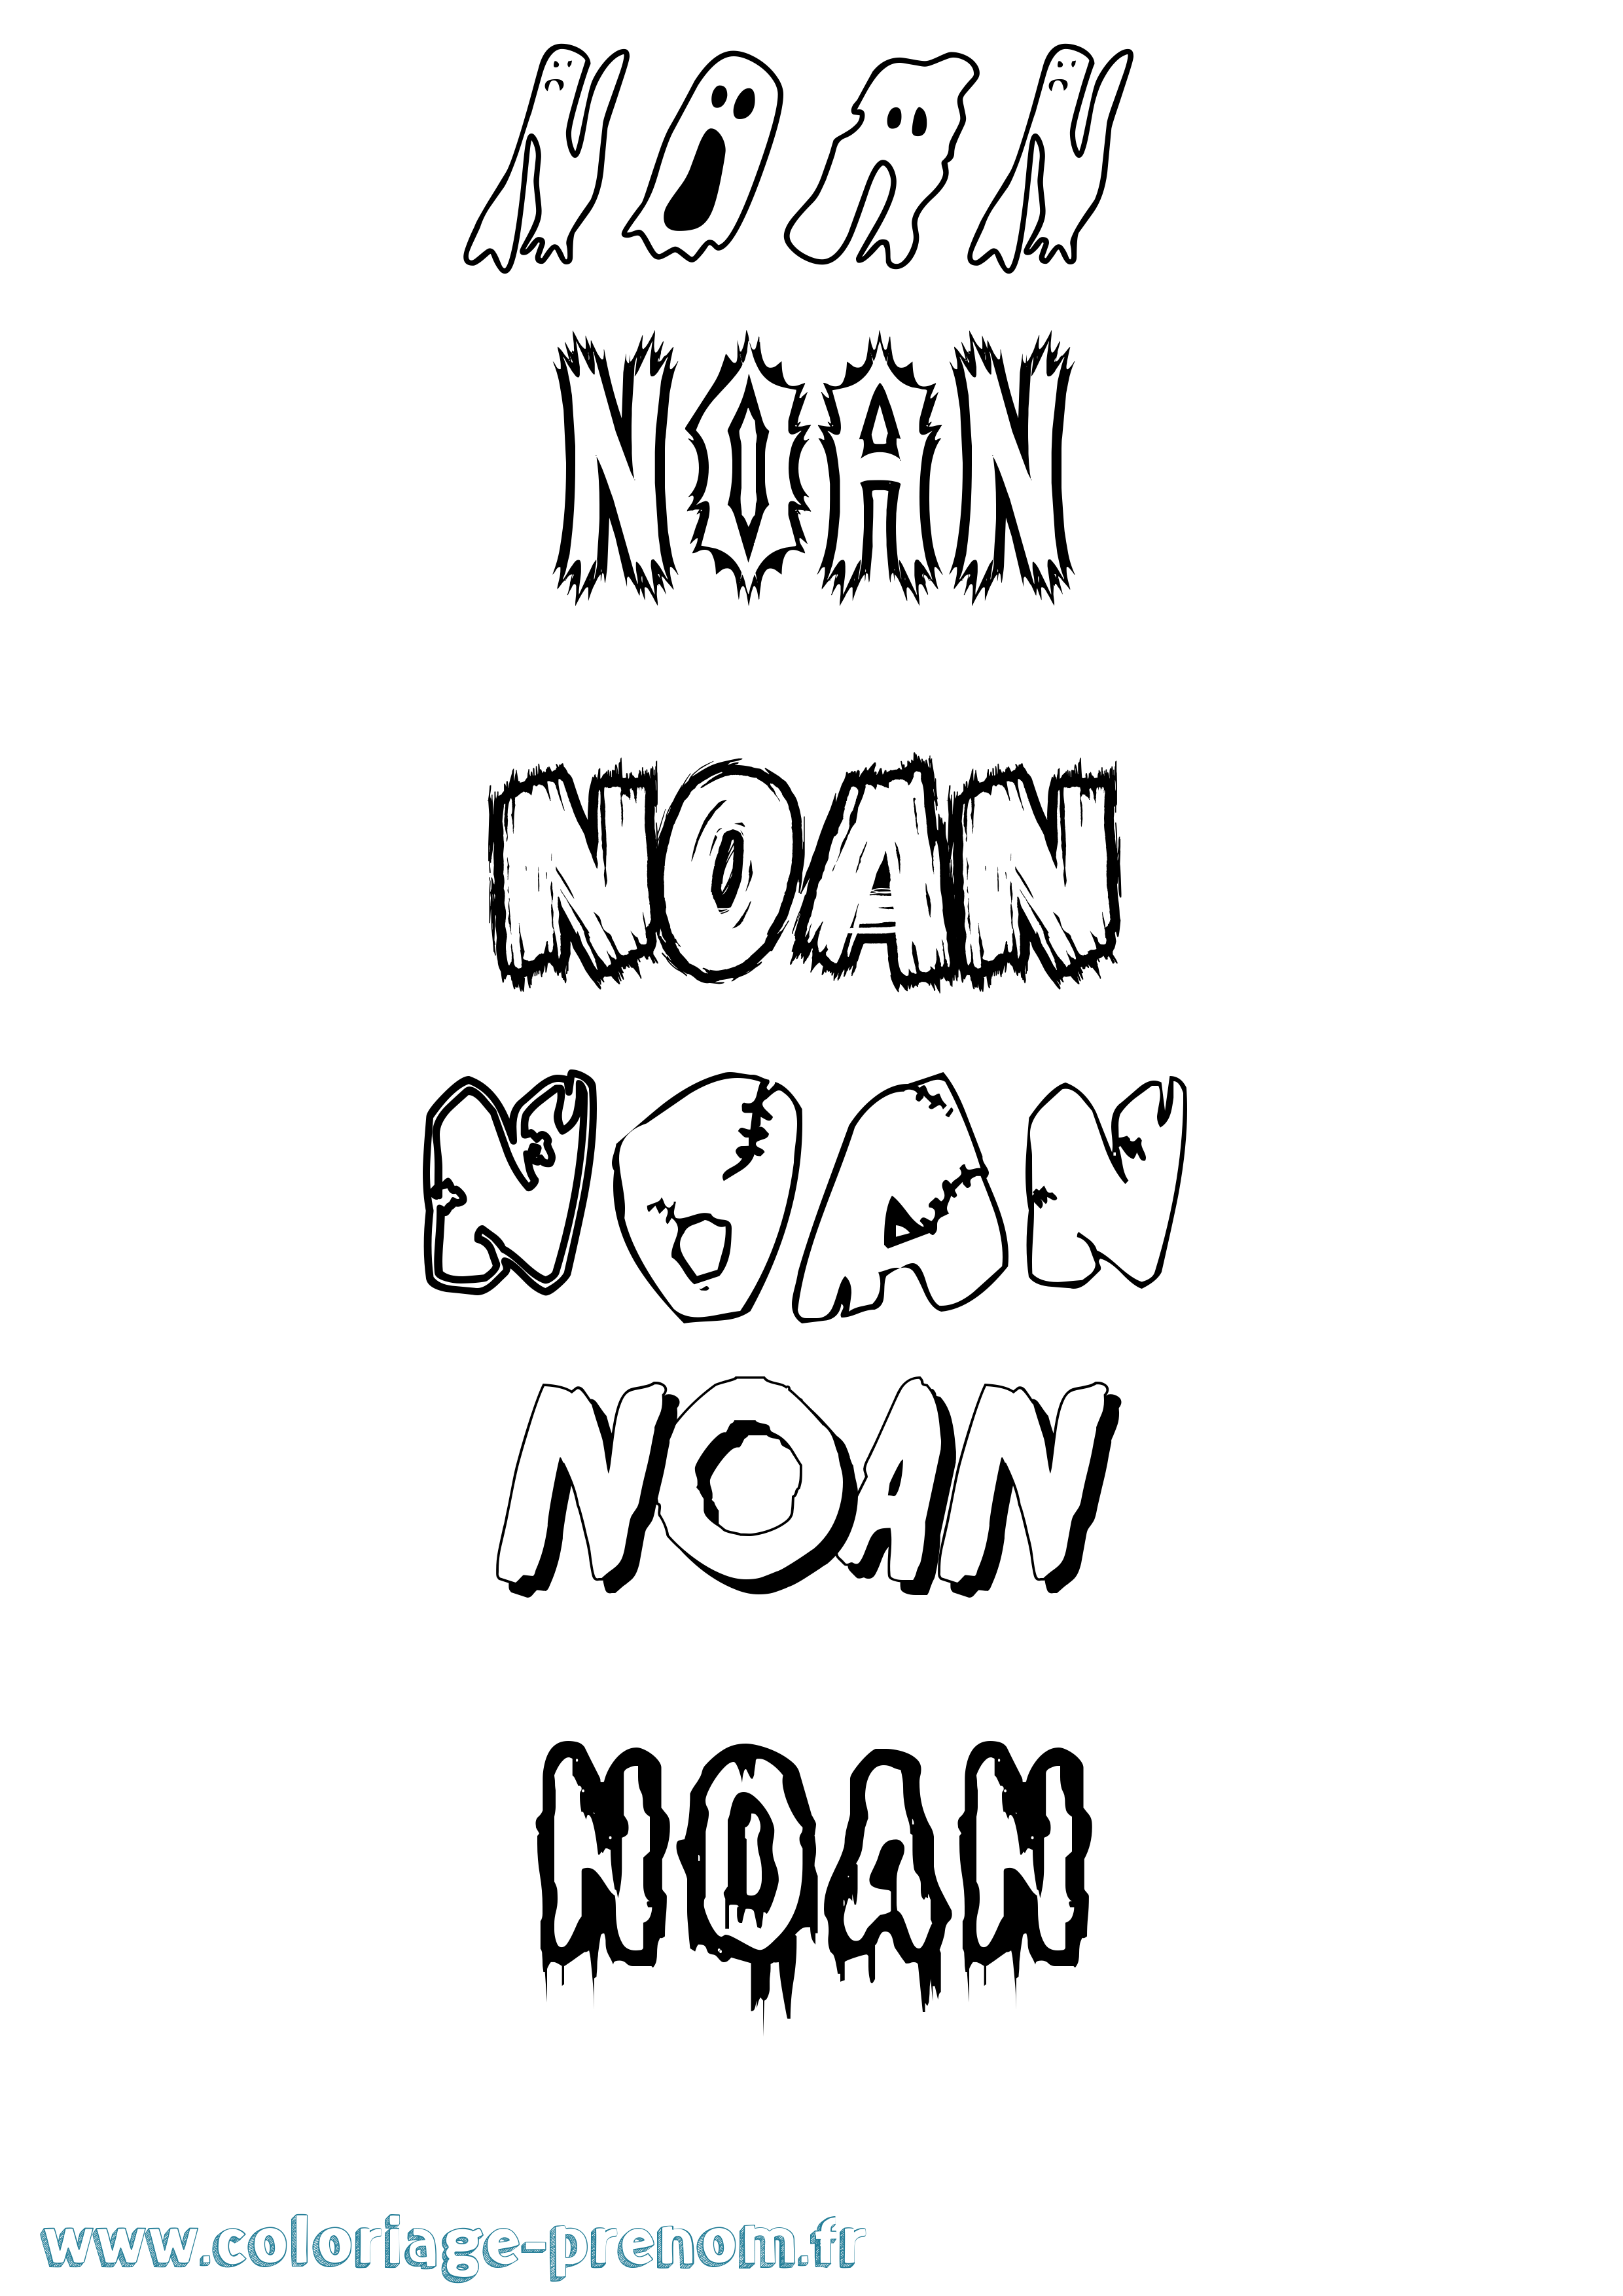 Coloriage prénom Noan